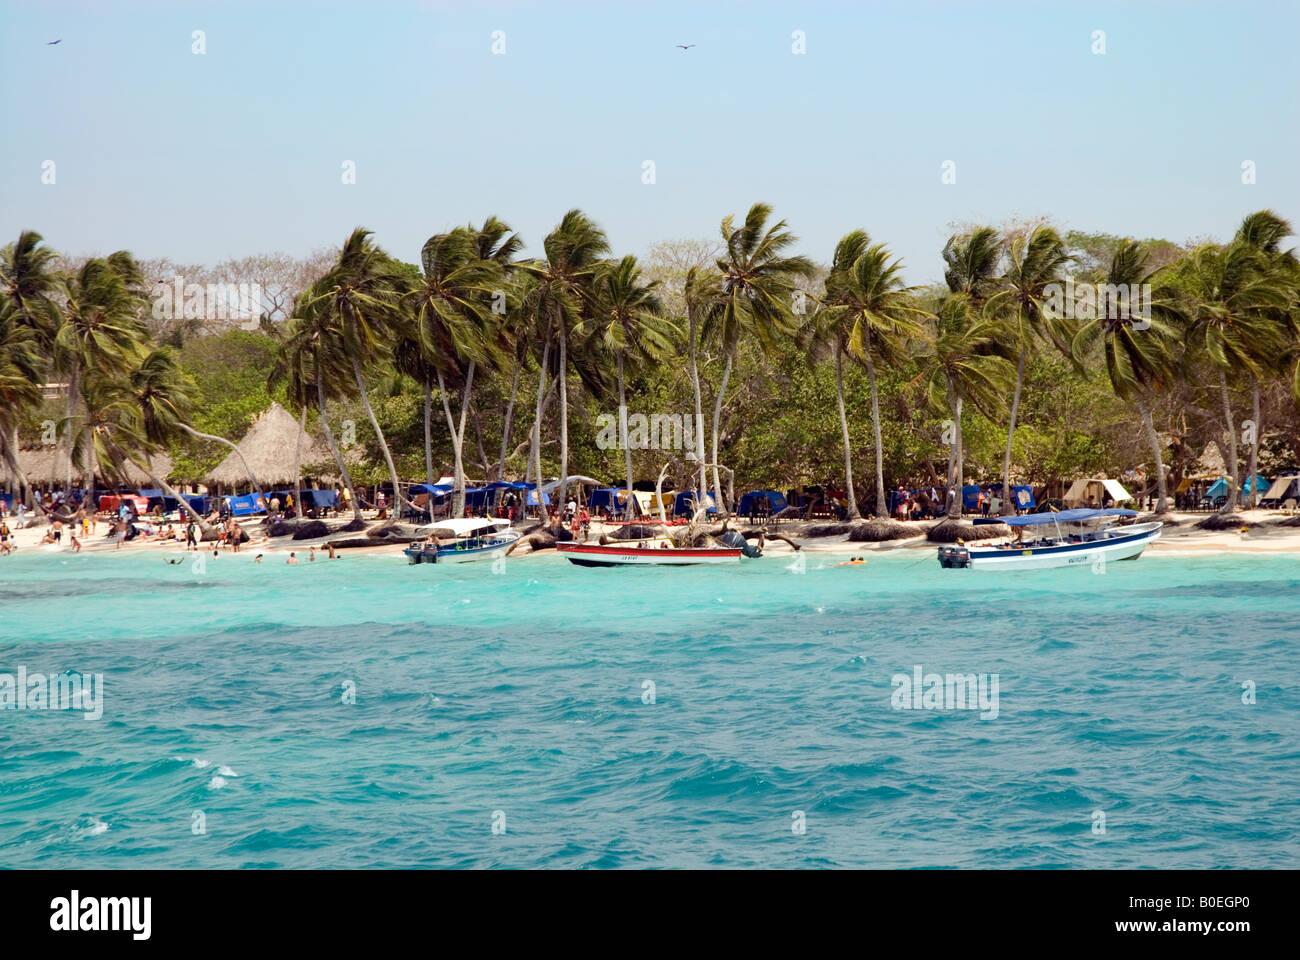 Playa Blanca on the Isla de Baru, Cartagena de Indias, Colombia Stock Photo